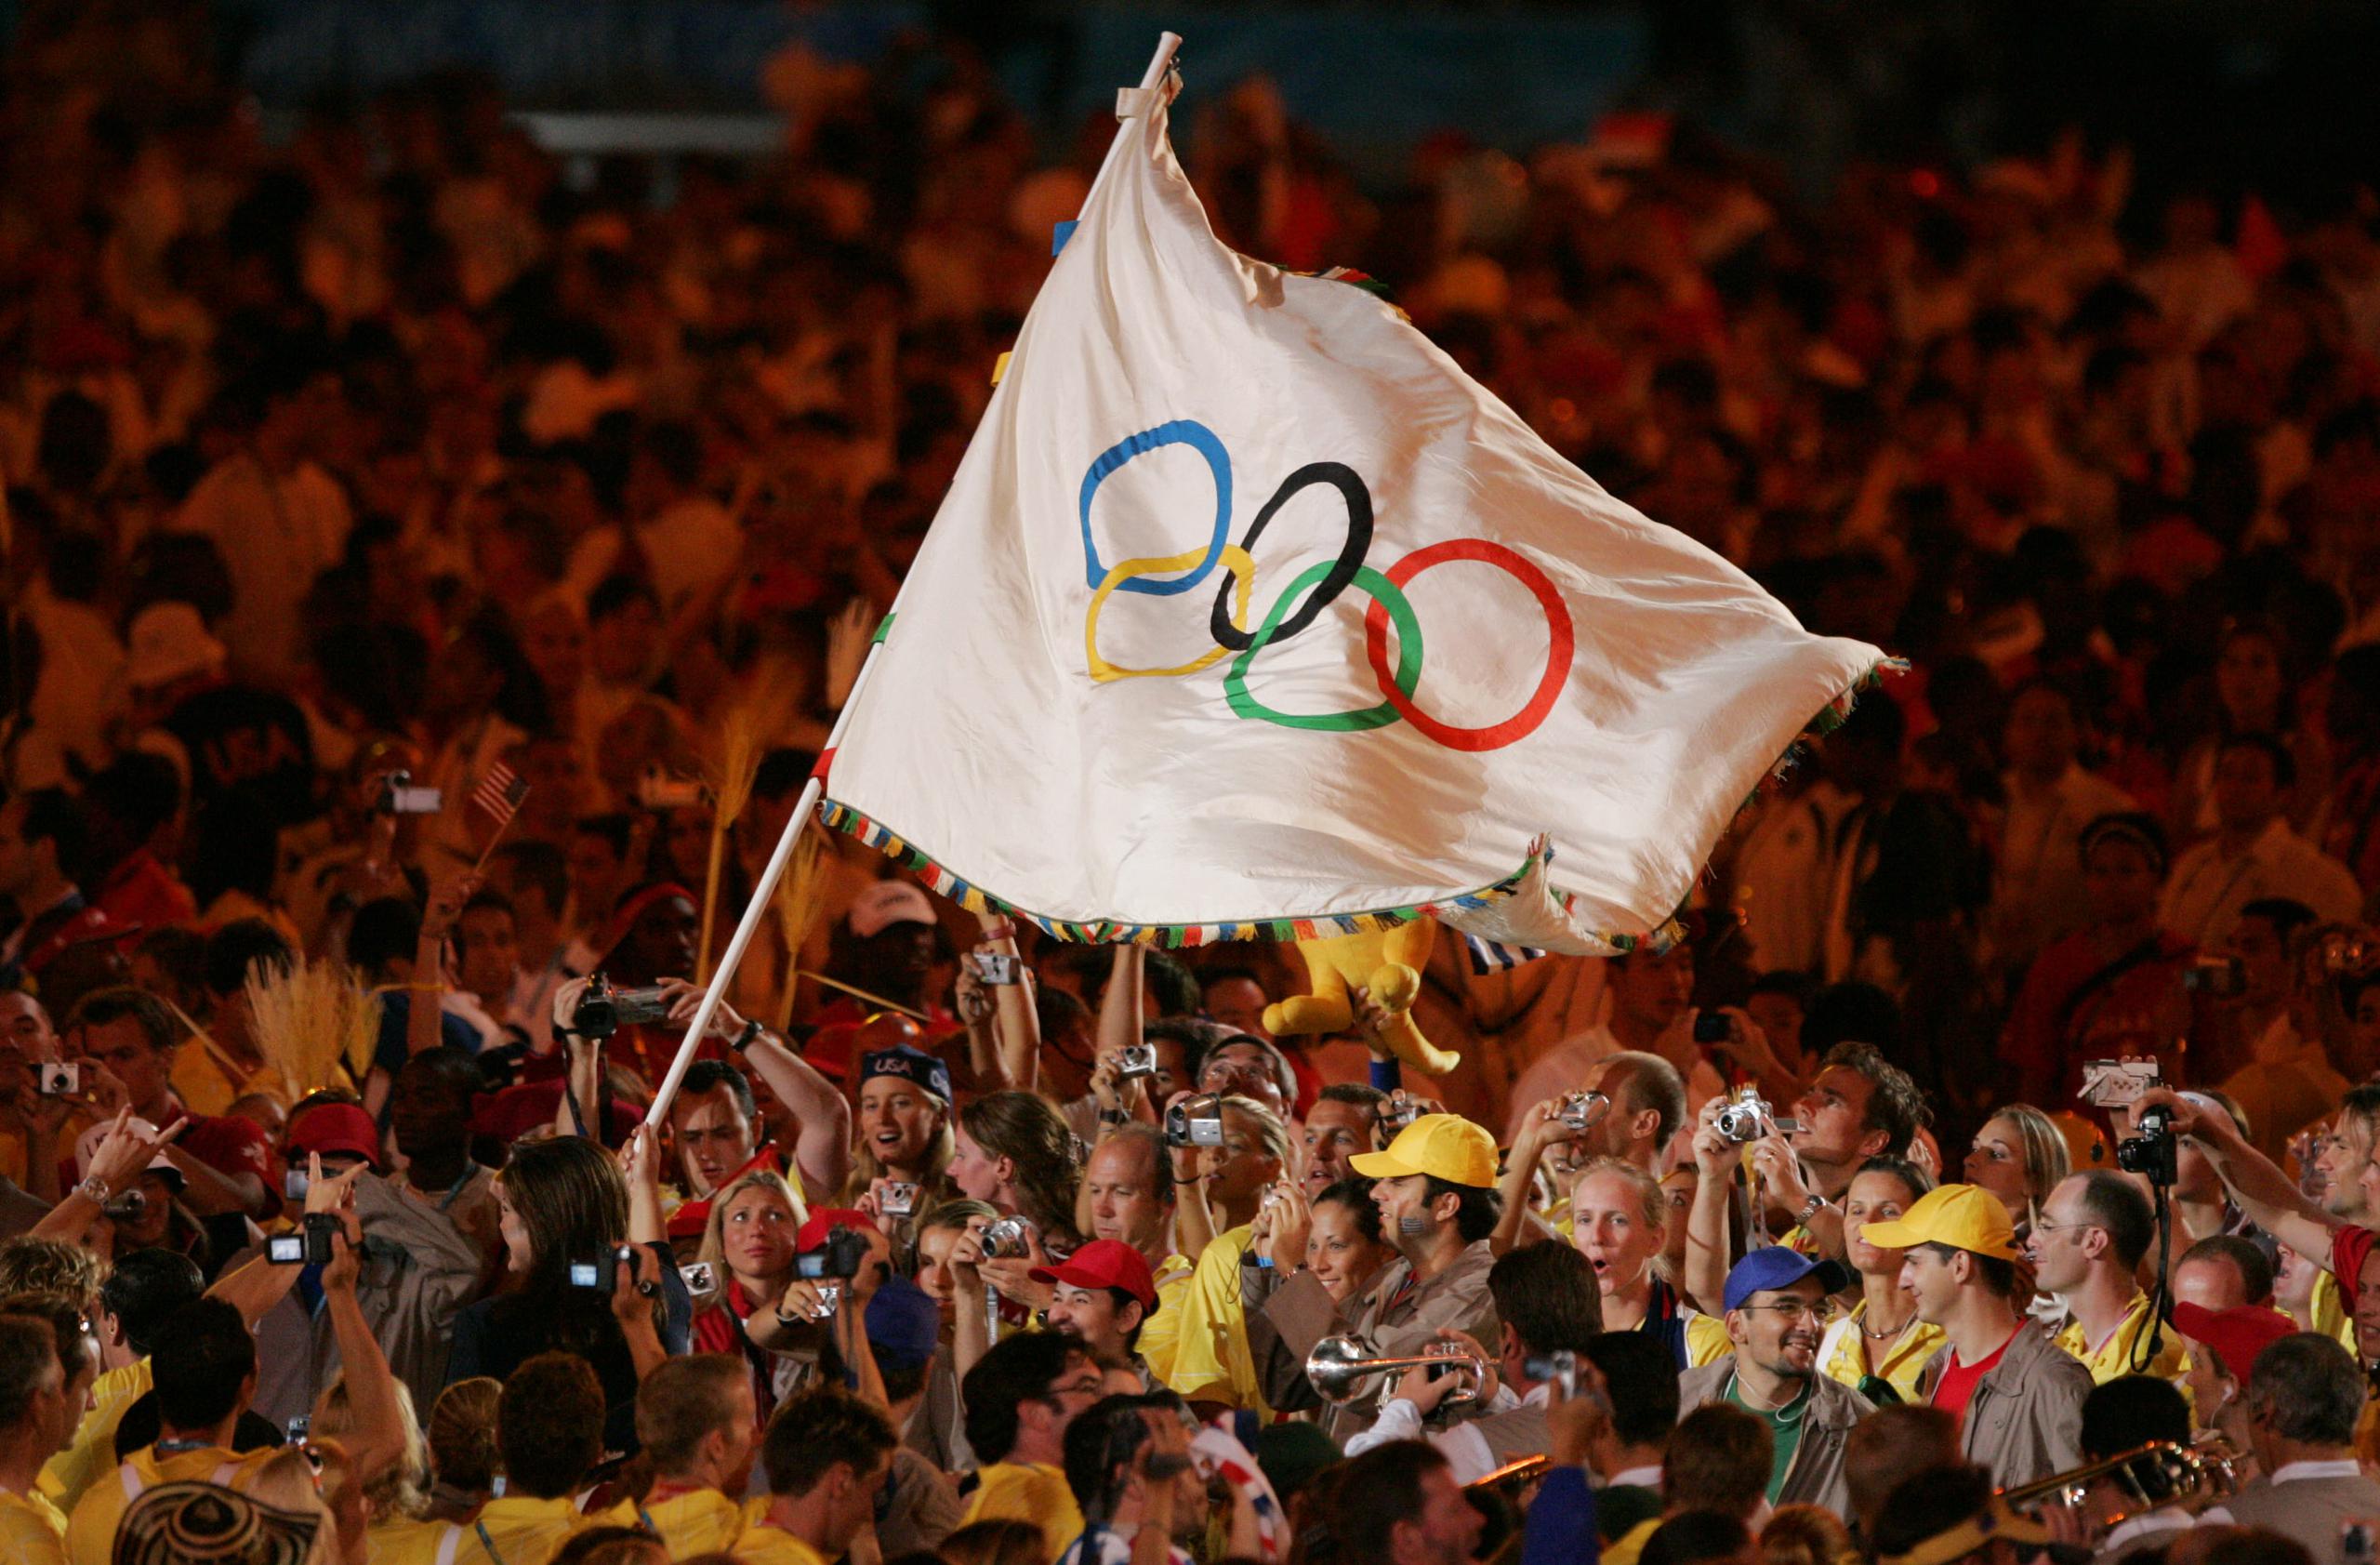 Los anillos de la bandera olímpica simbolizan los cinco continentes del mundo entrelazados por el olimpismo.